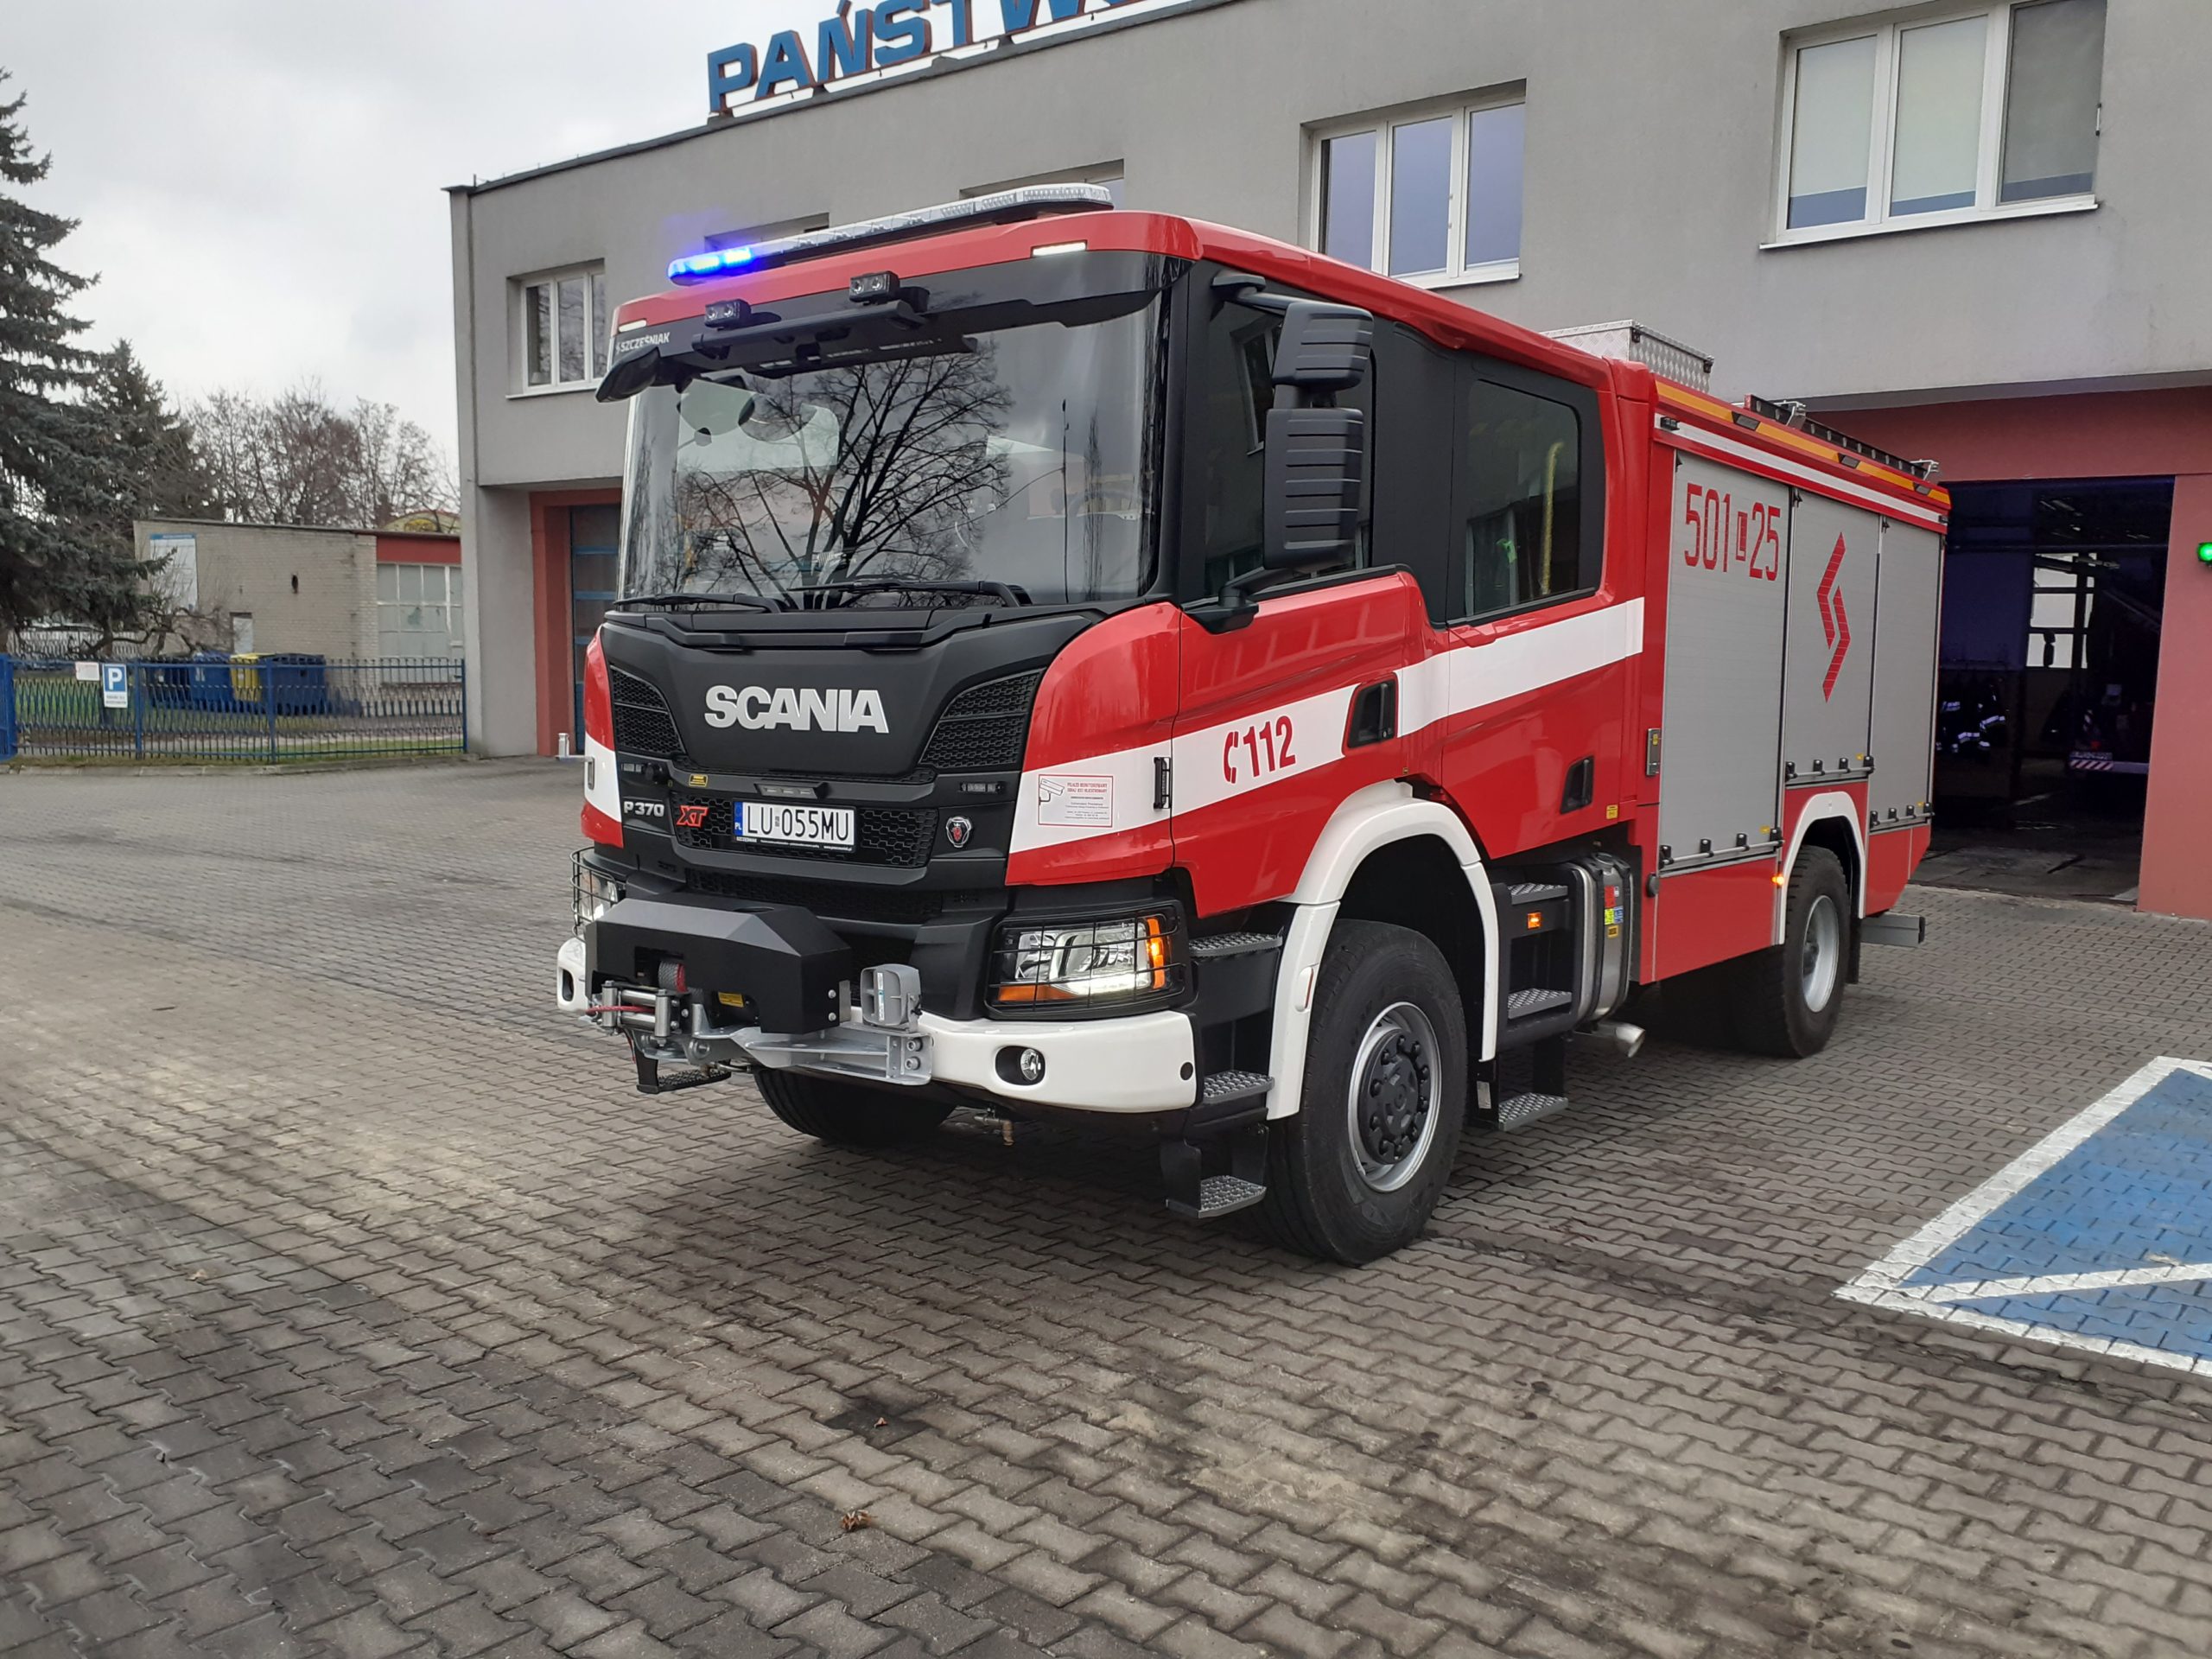 Nowy Ciężki Samochód Ratowniczo-Gaśniczy Z Napędem 4×4 Dla Puławskich Strażaków – Komenda Powiatowa Państwowej Straży Pożarnej W Puławach